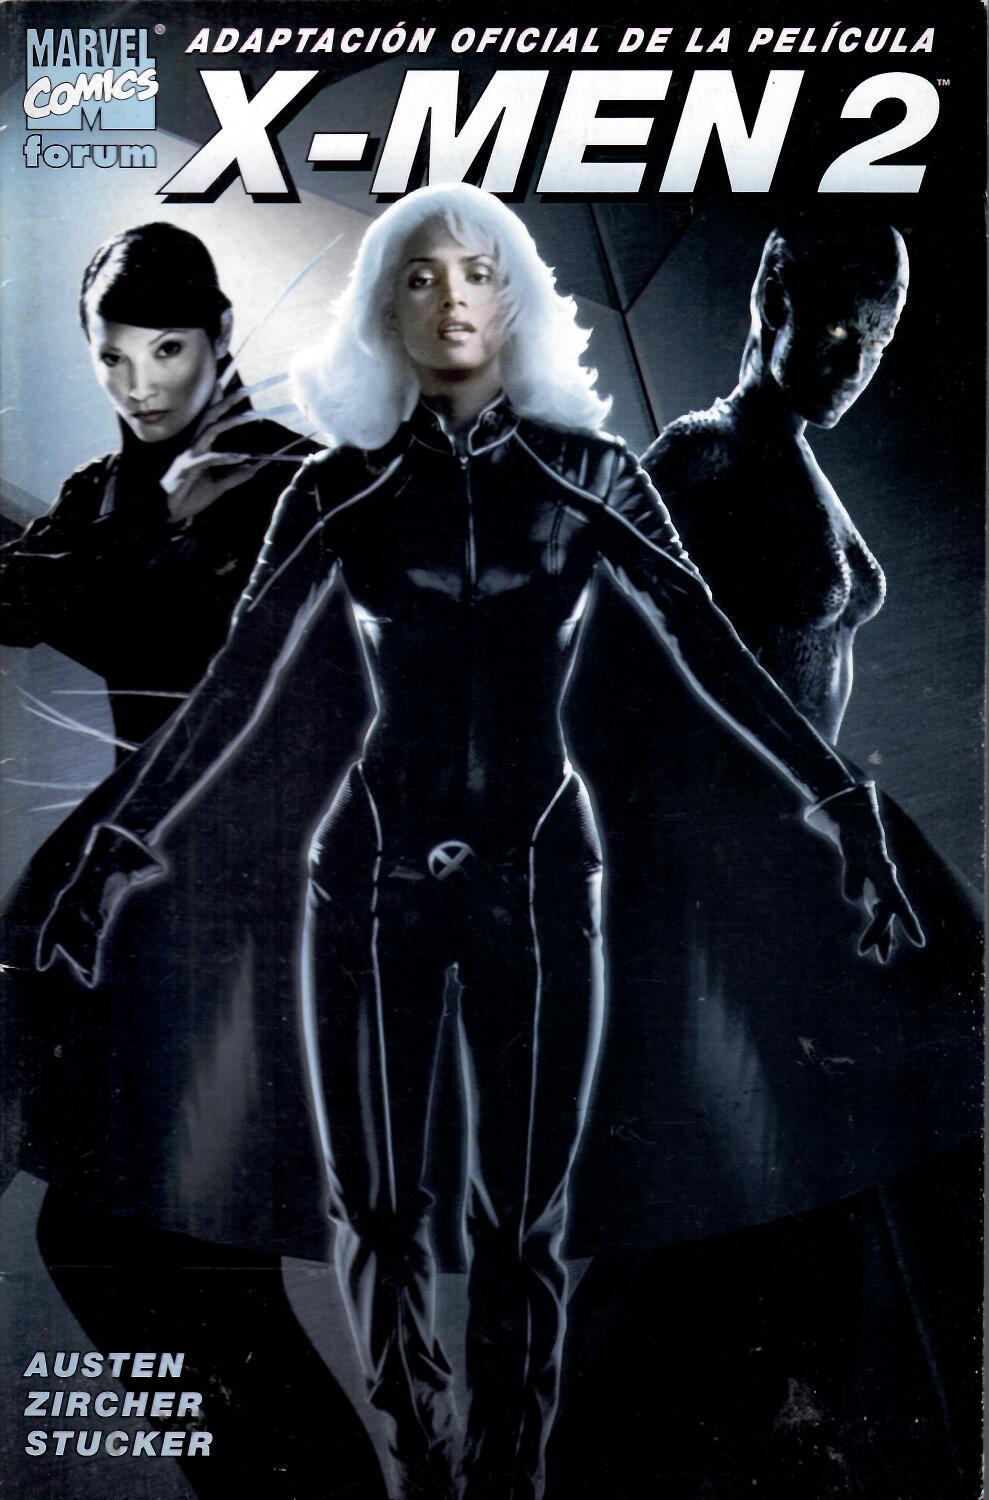 X-Men 2. Adaptación oficial de la película. Forum 2003